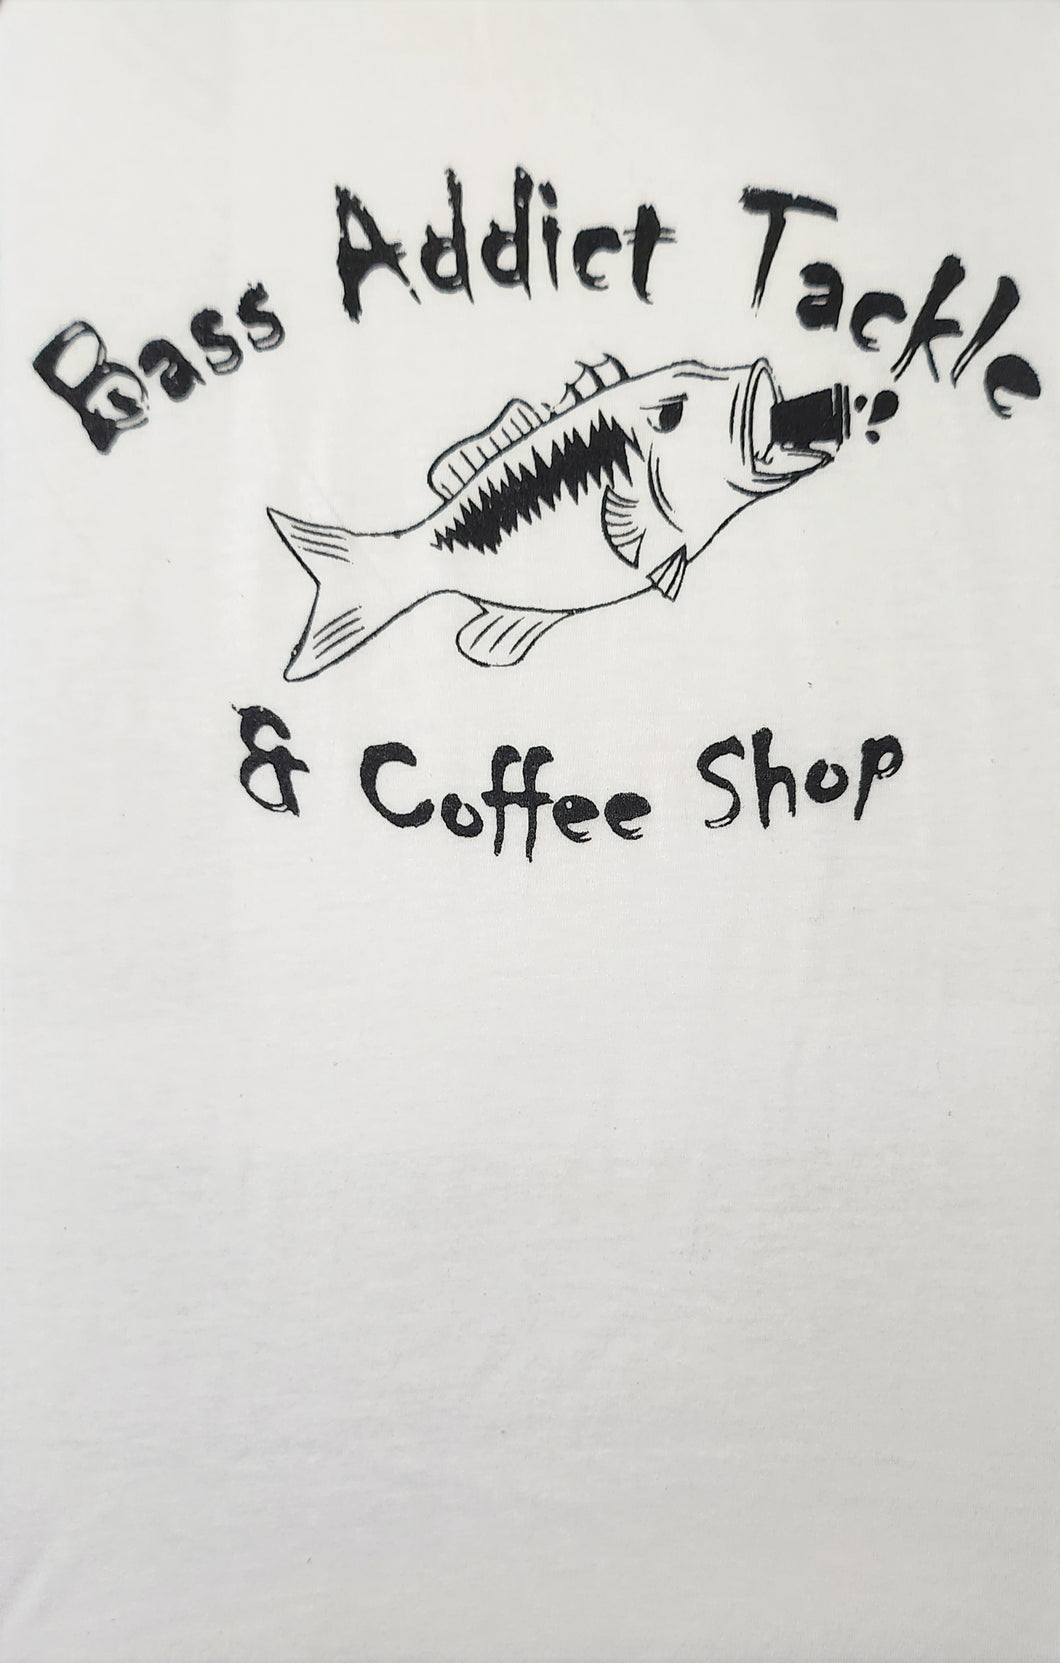 Bass Shirts